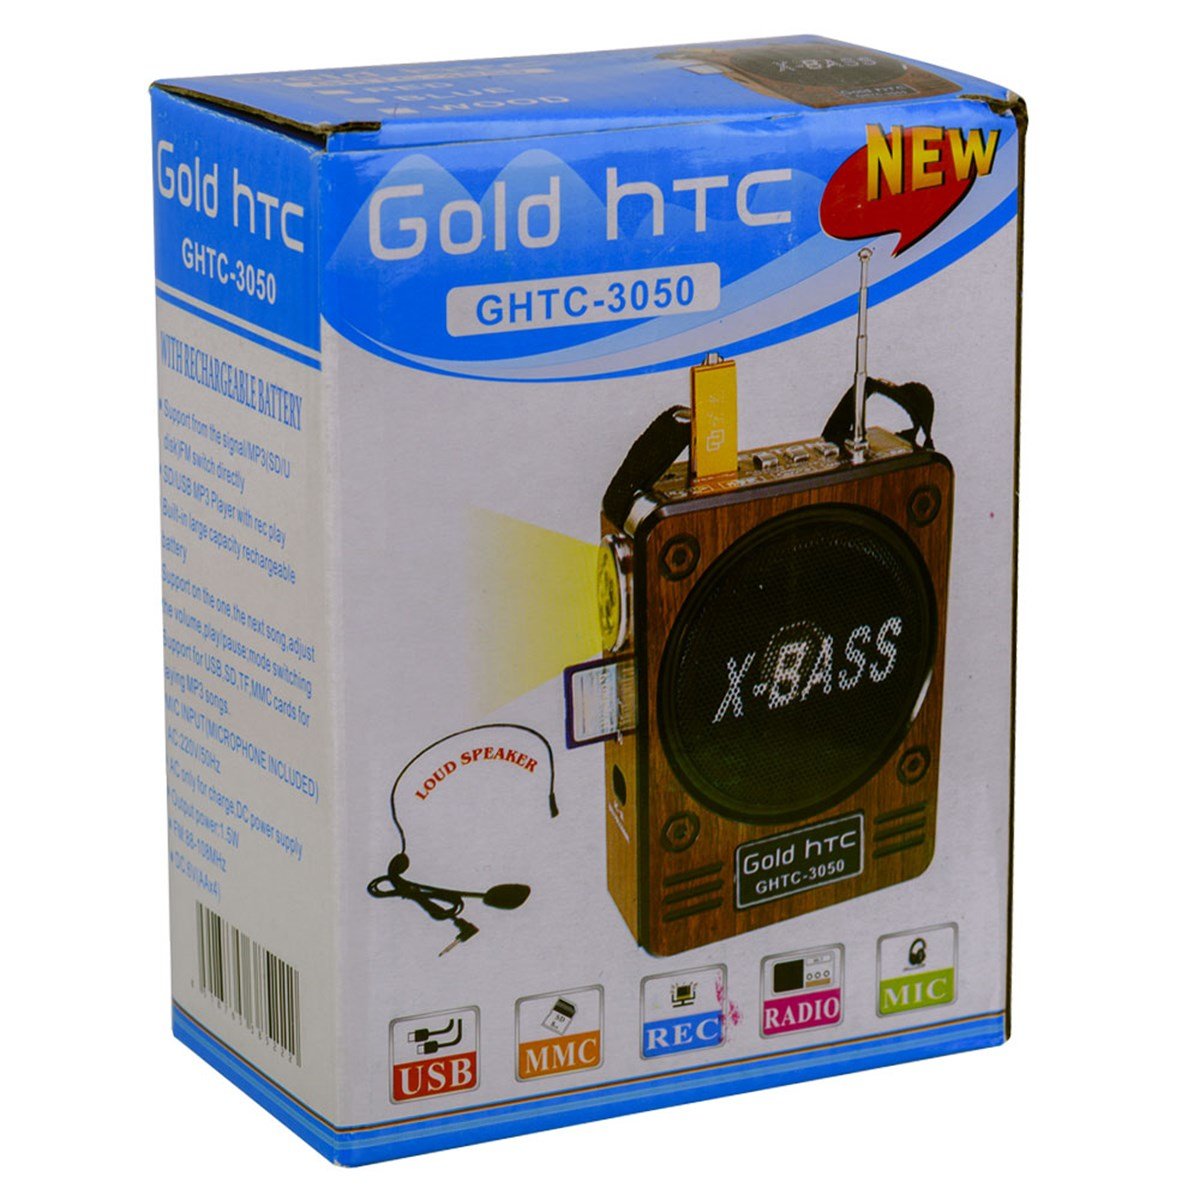 GOLD HTC USB+FM Radyo Headset Mikrofonlu GHTC-3050